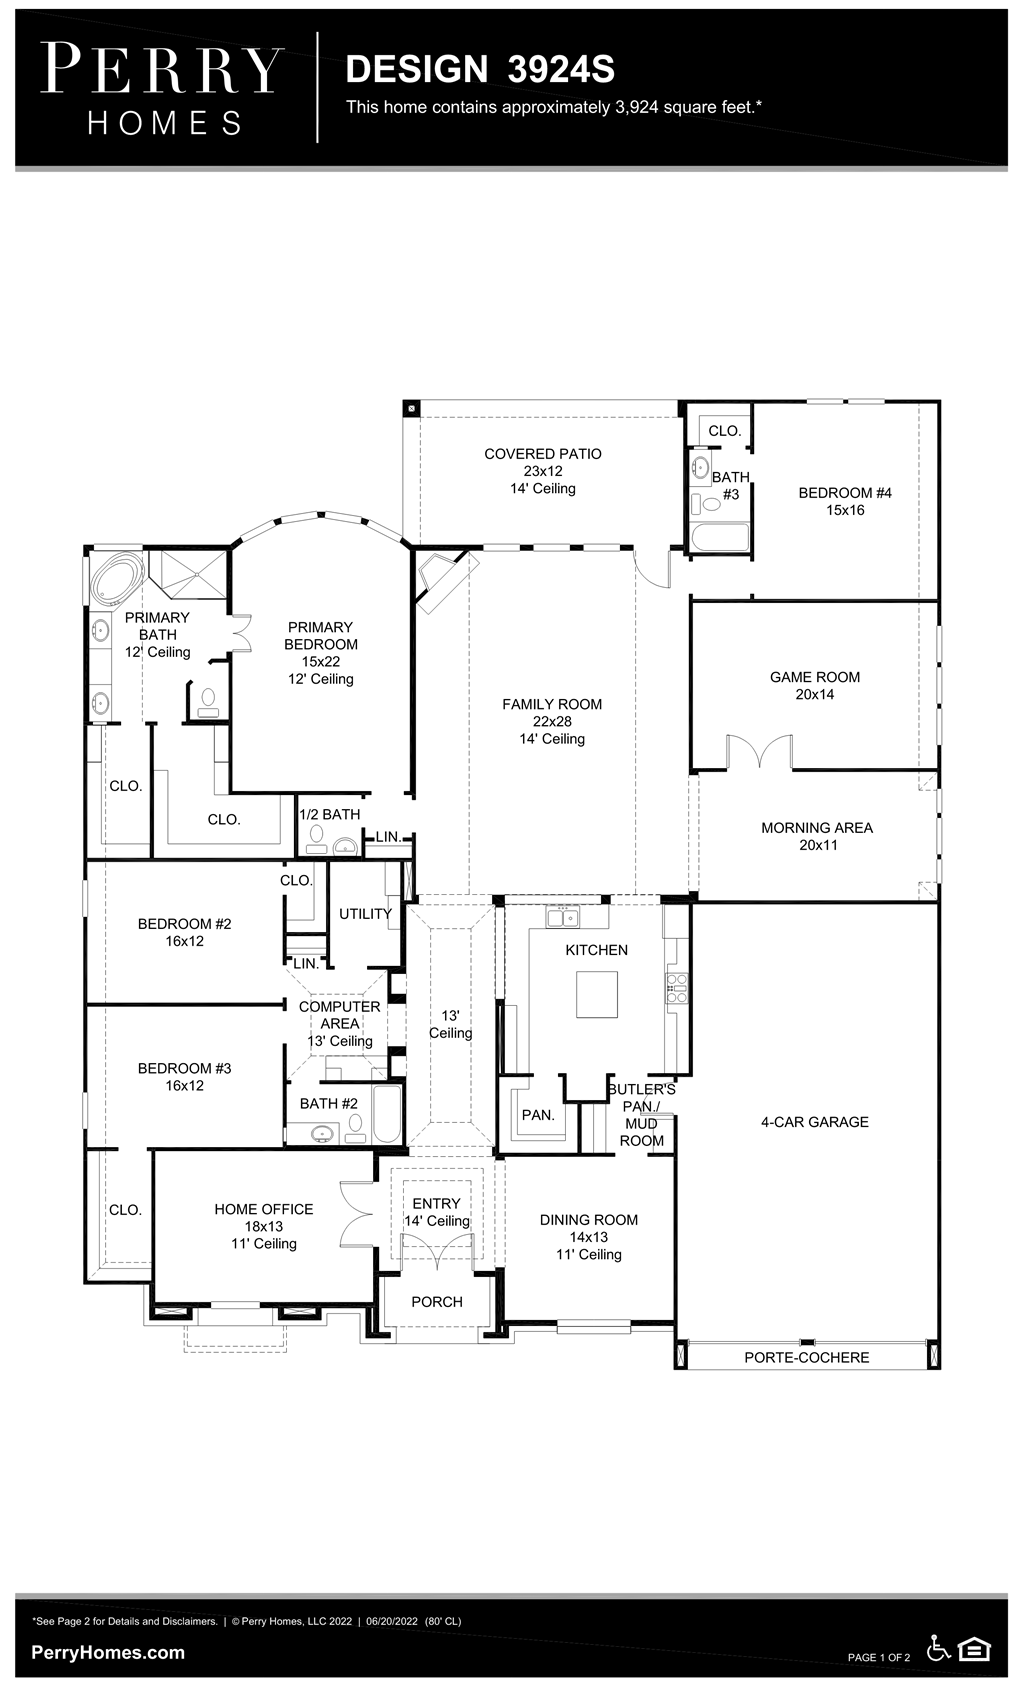 Floor Plan for 3924S